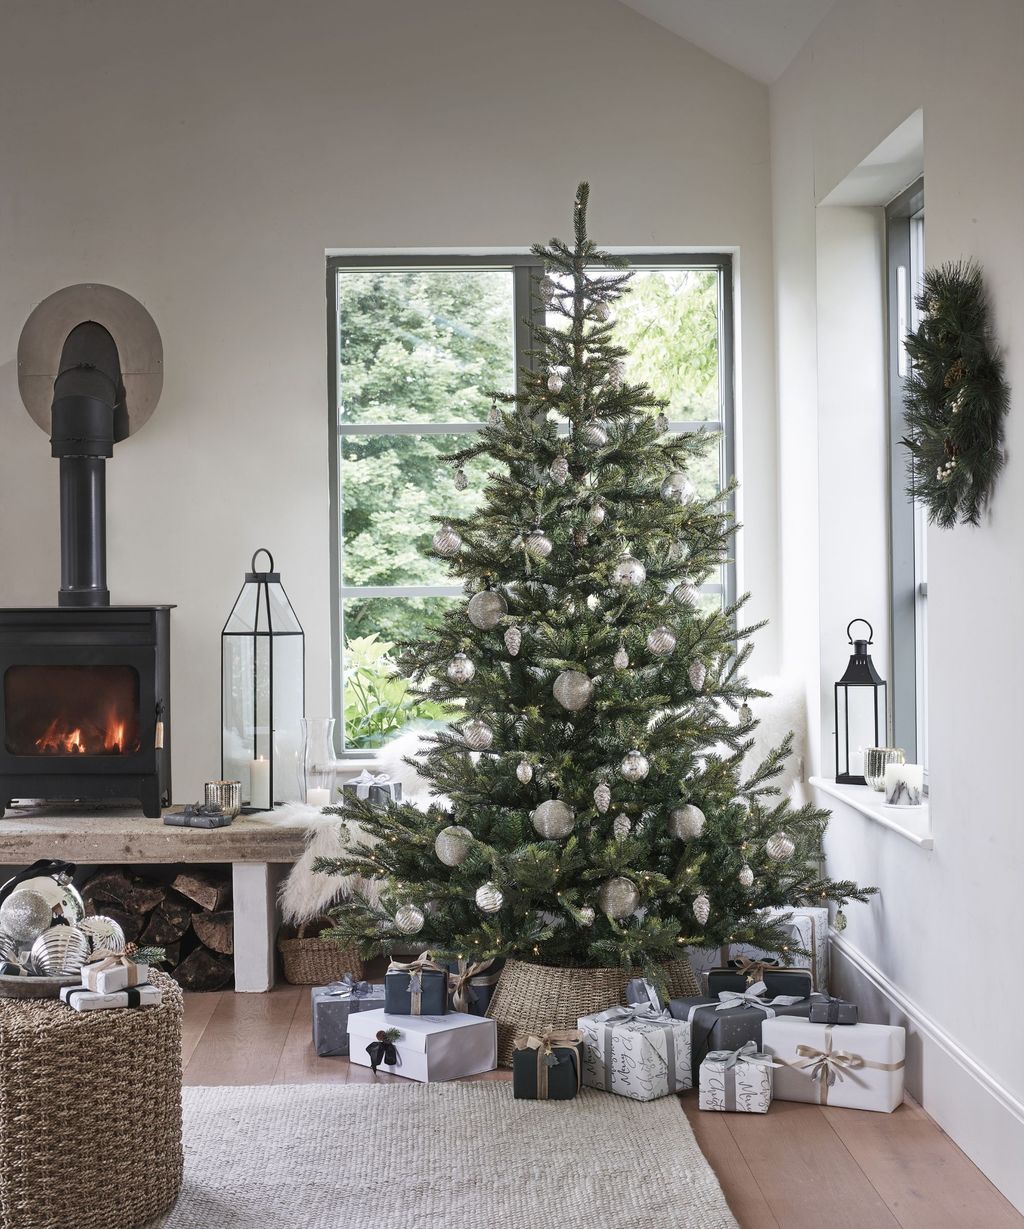 Christmas window decor ideas: 20 festive ideas you'll love